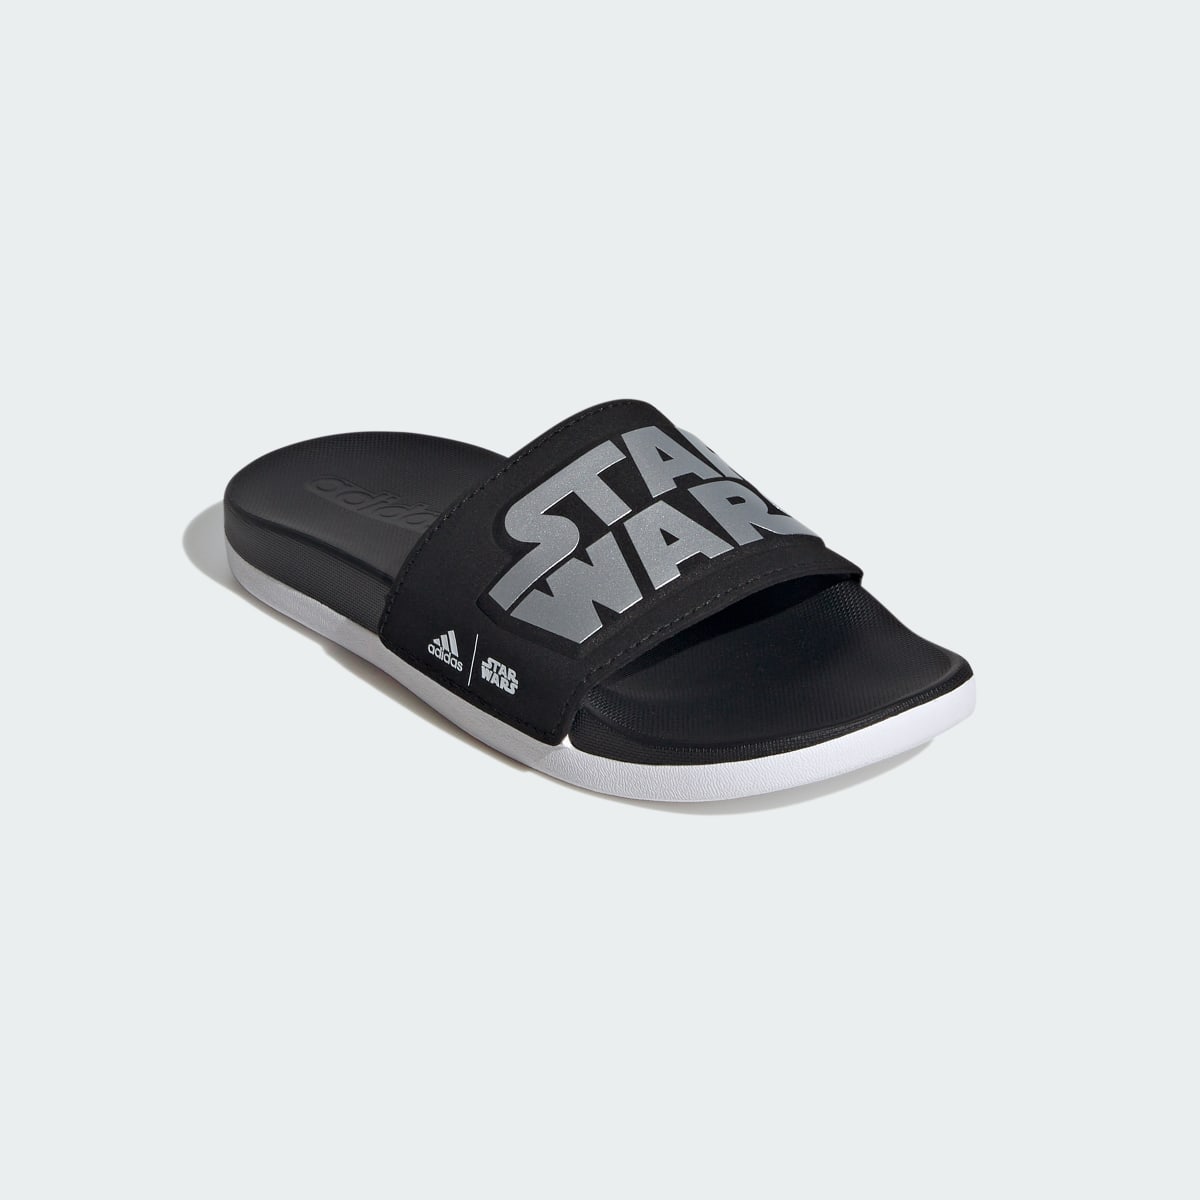 Adidas Star Wars Adilette Comfort Slides Kids. 5